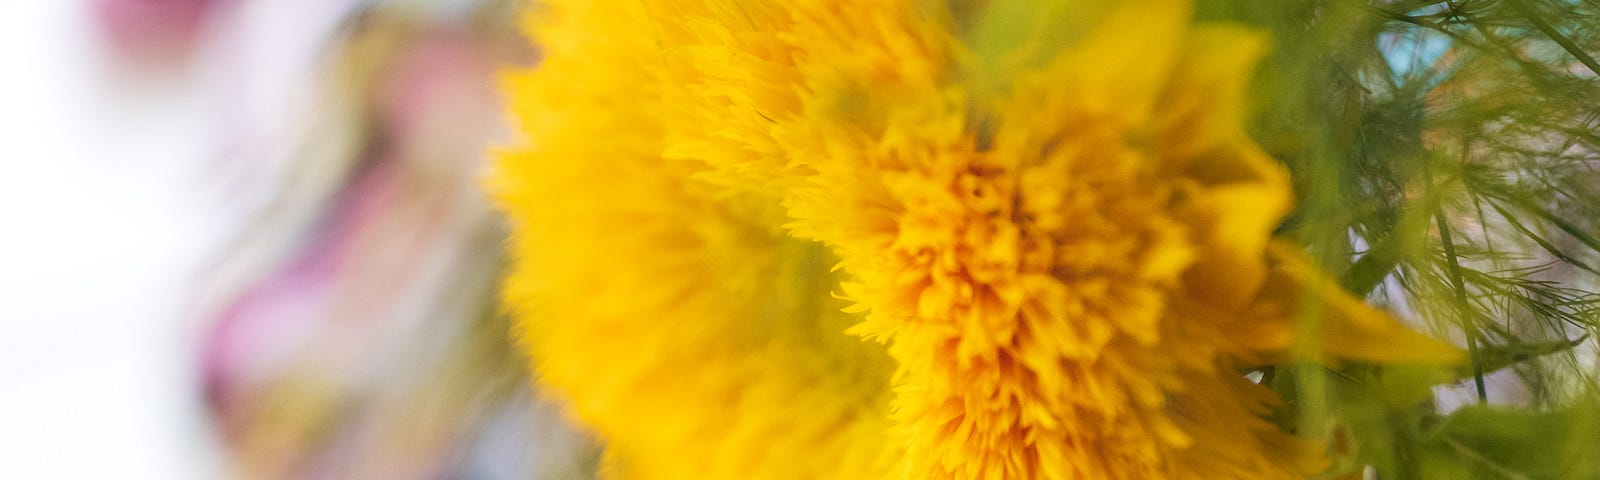 summer bright yellow lion sunflower close-up, turquoise flip-flops, beach towel | © pockett dessert